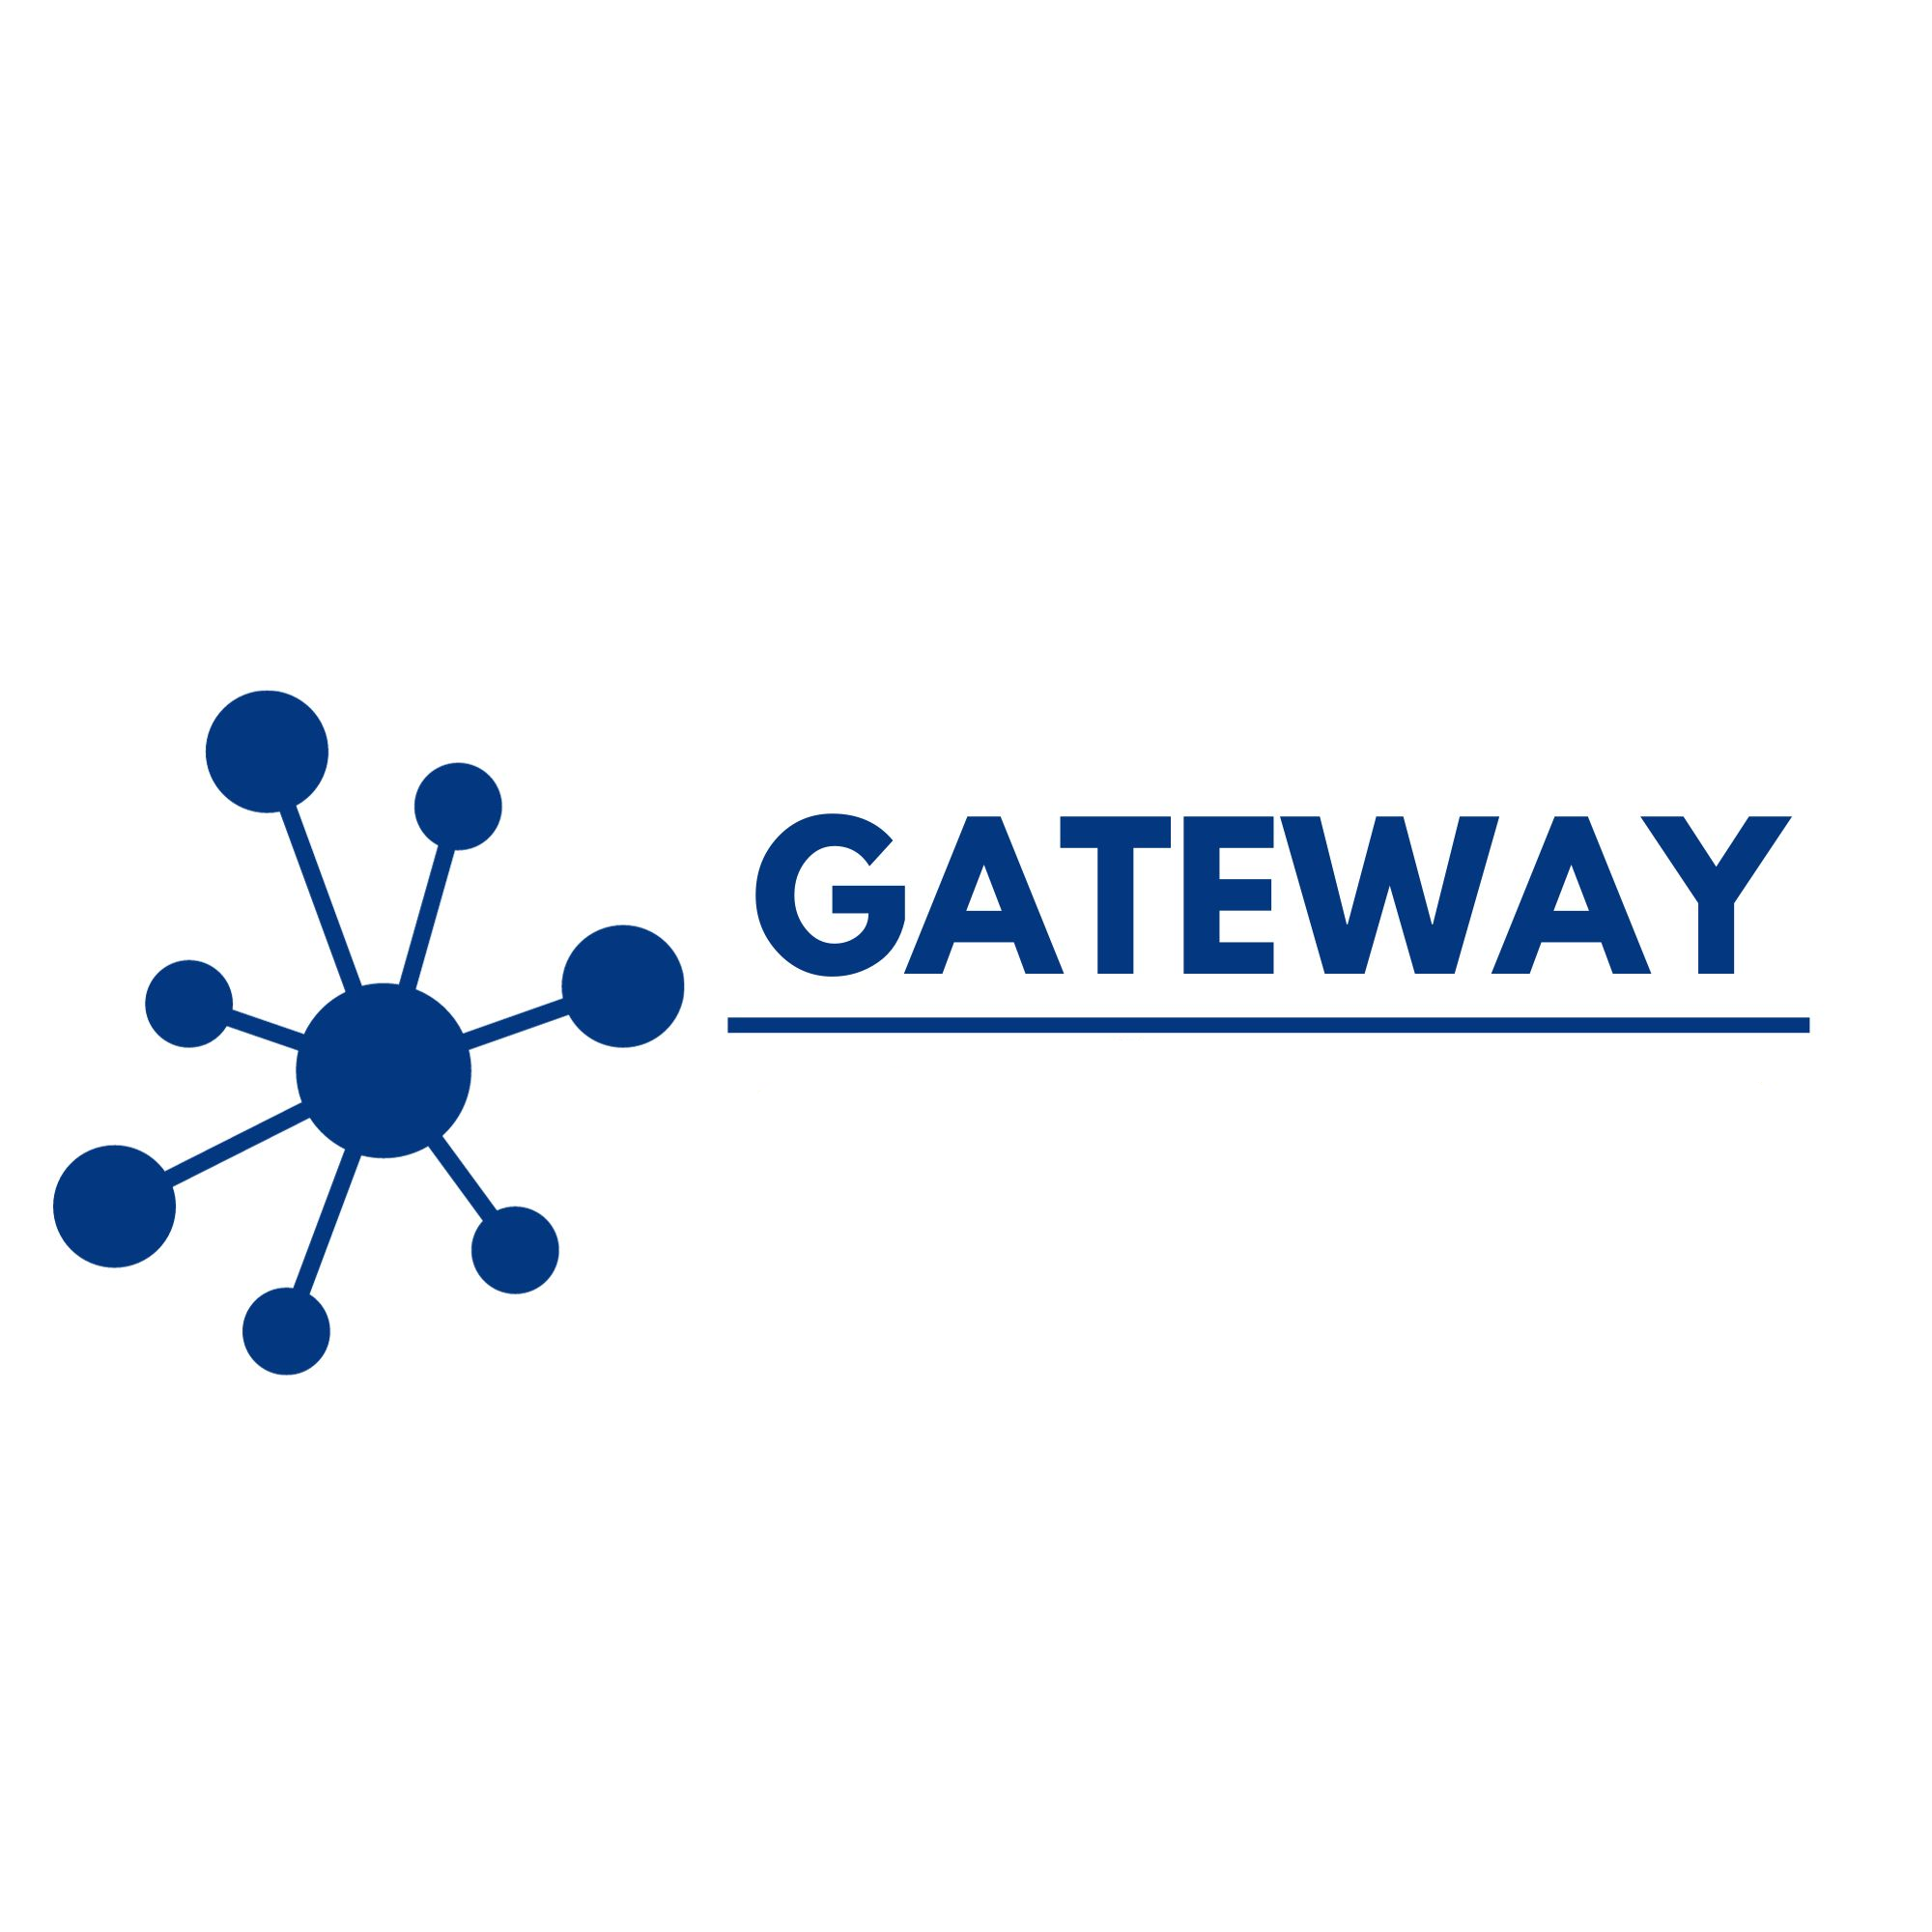 Gateway_ohne-Unterlogos Unsere News